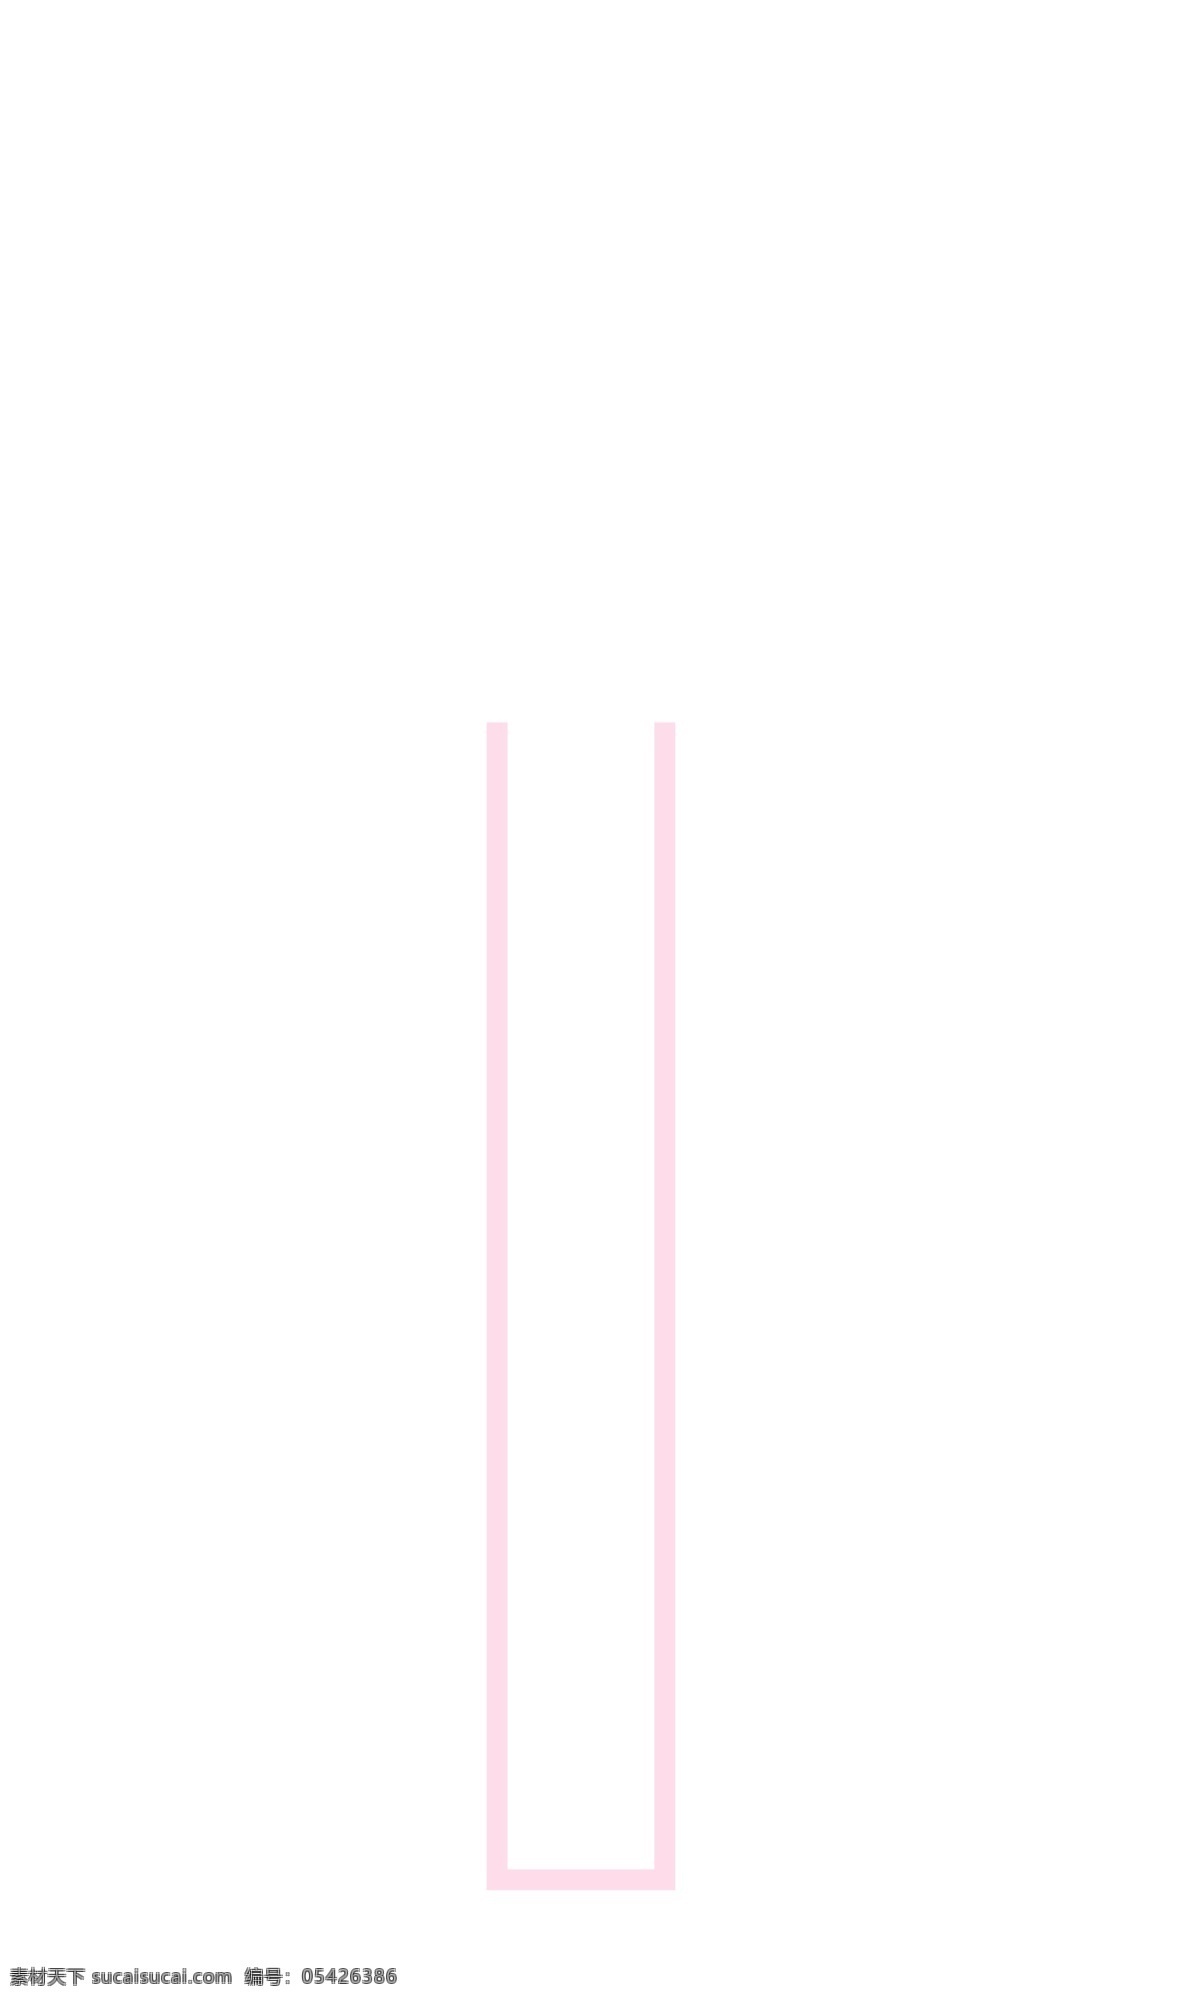 粉红色 边框 白色 矩形 主题